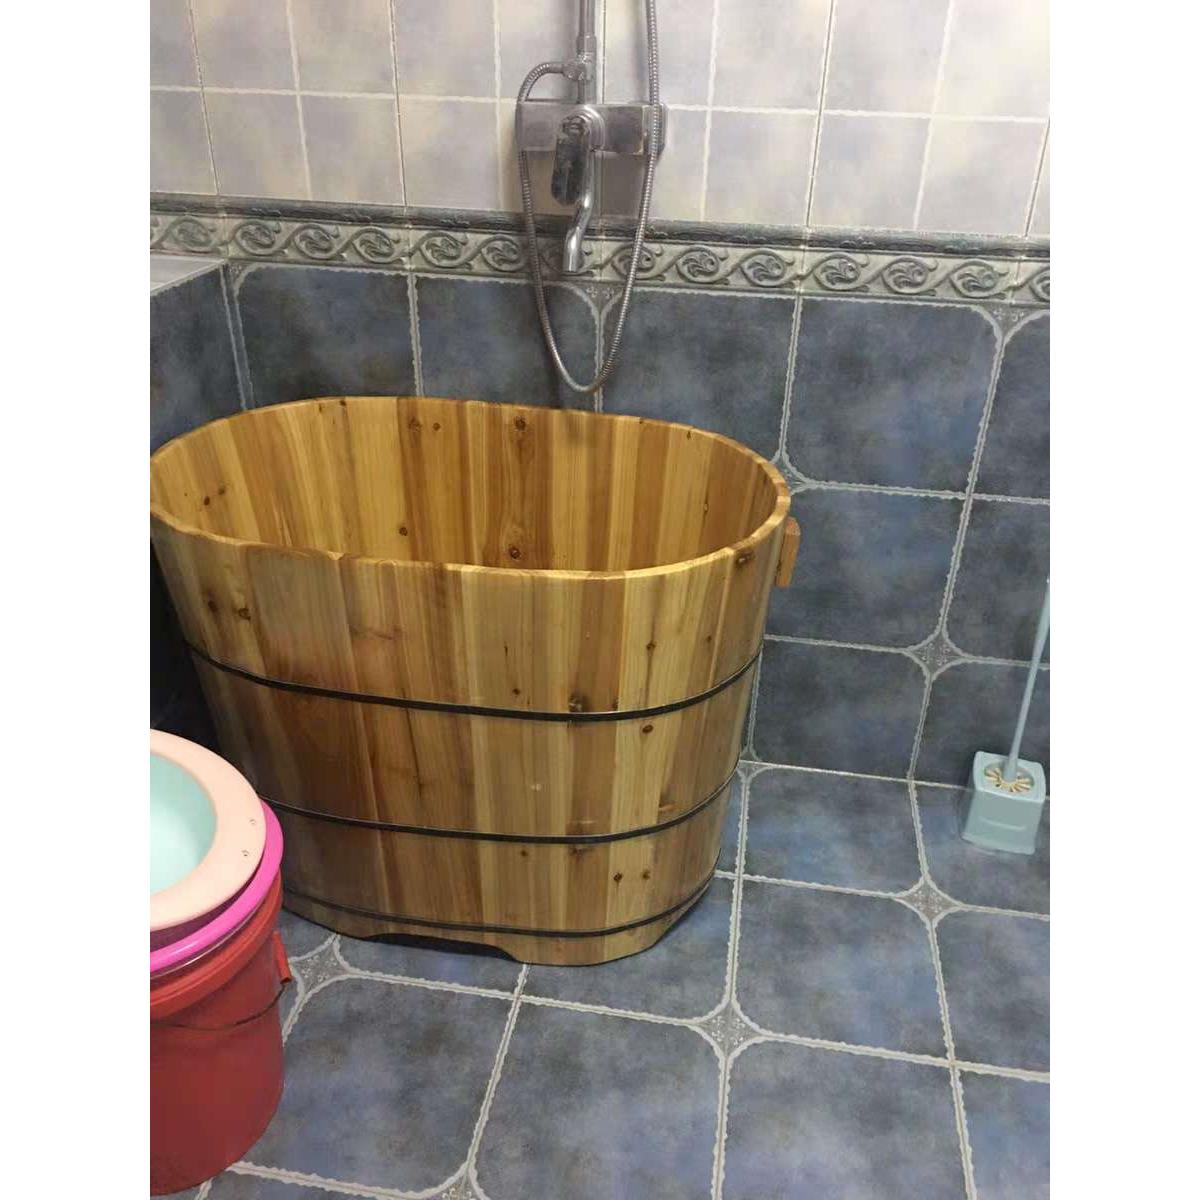 木桶浴桶加高不占地成人泡澡木桶洗澡桶实木浴缸家用洗澡盆沐浴桶